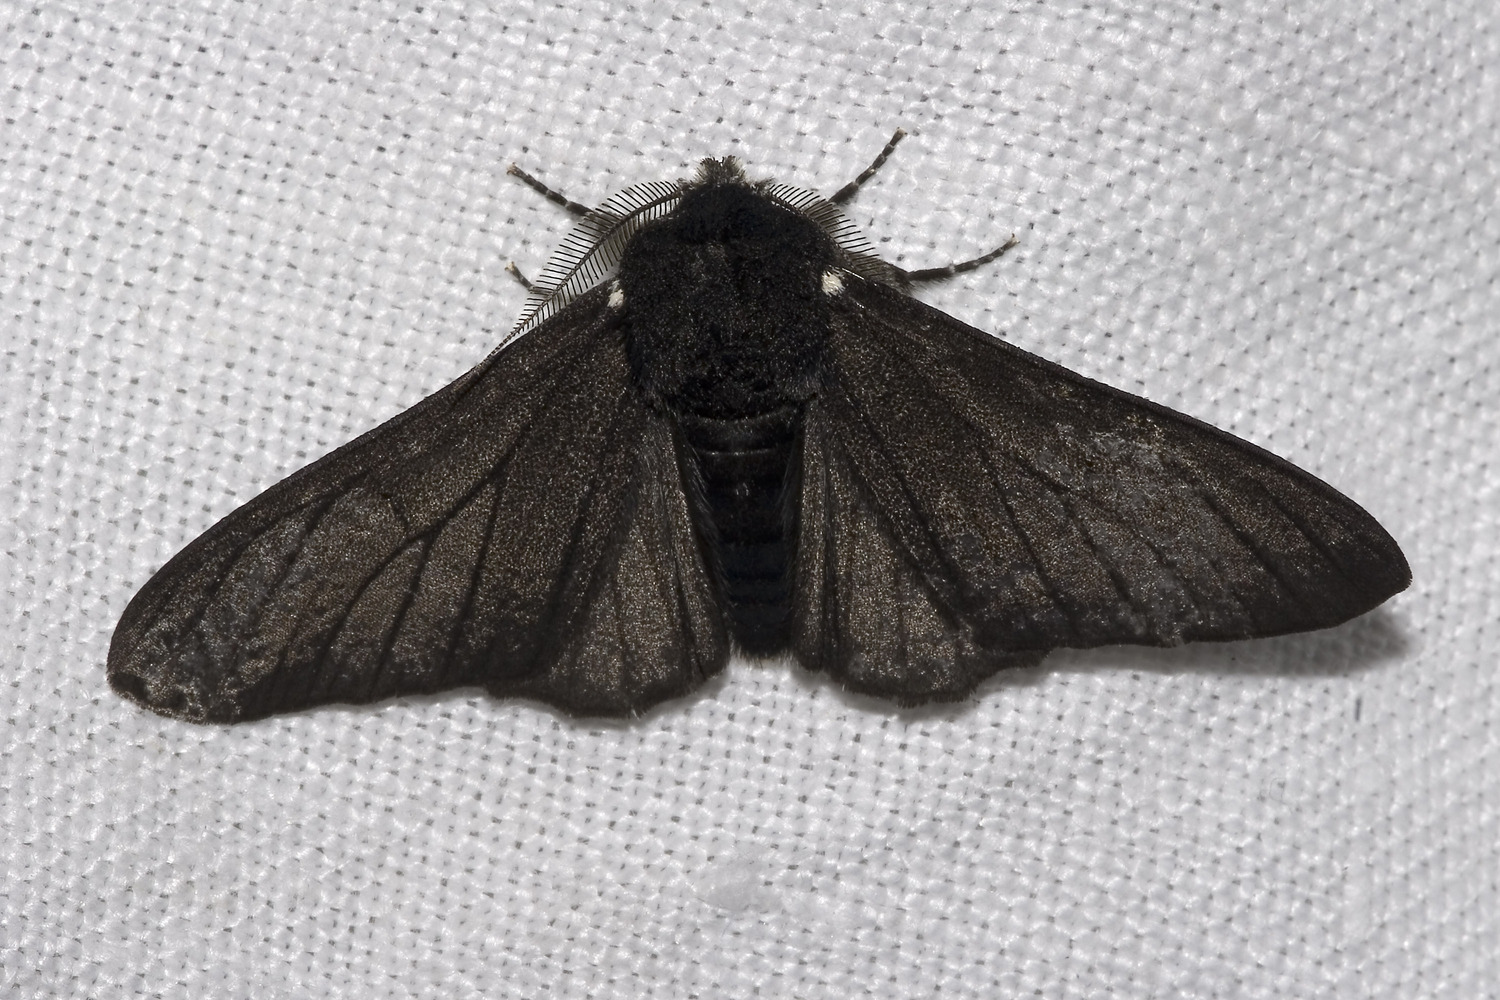 Black peppered moth